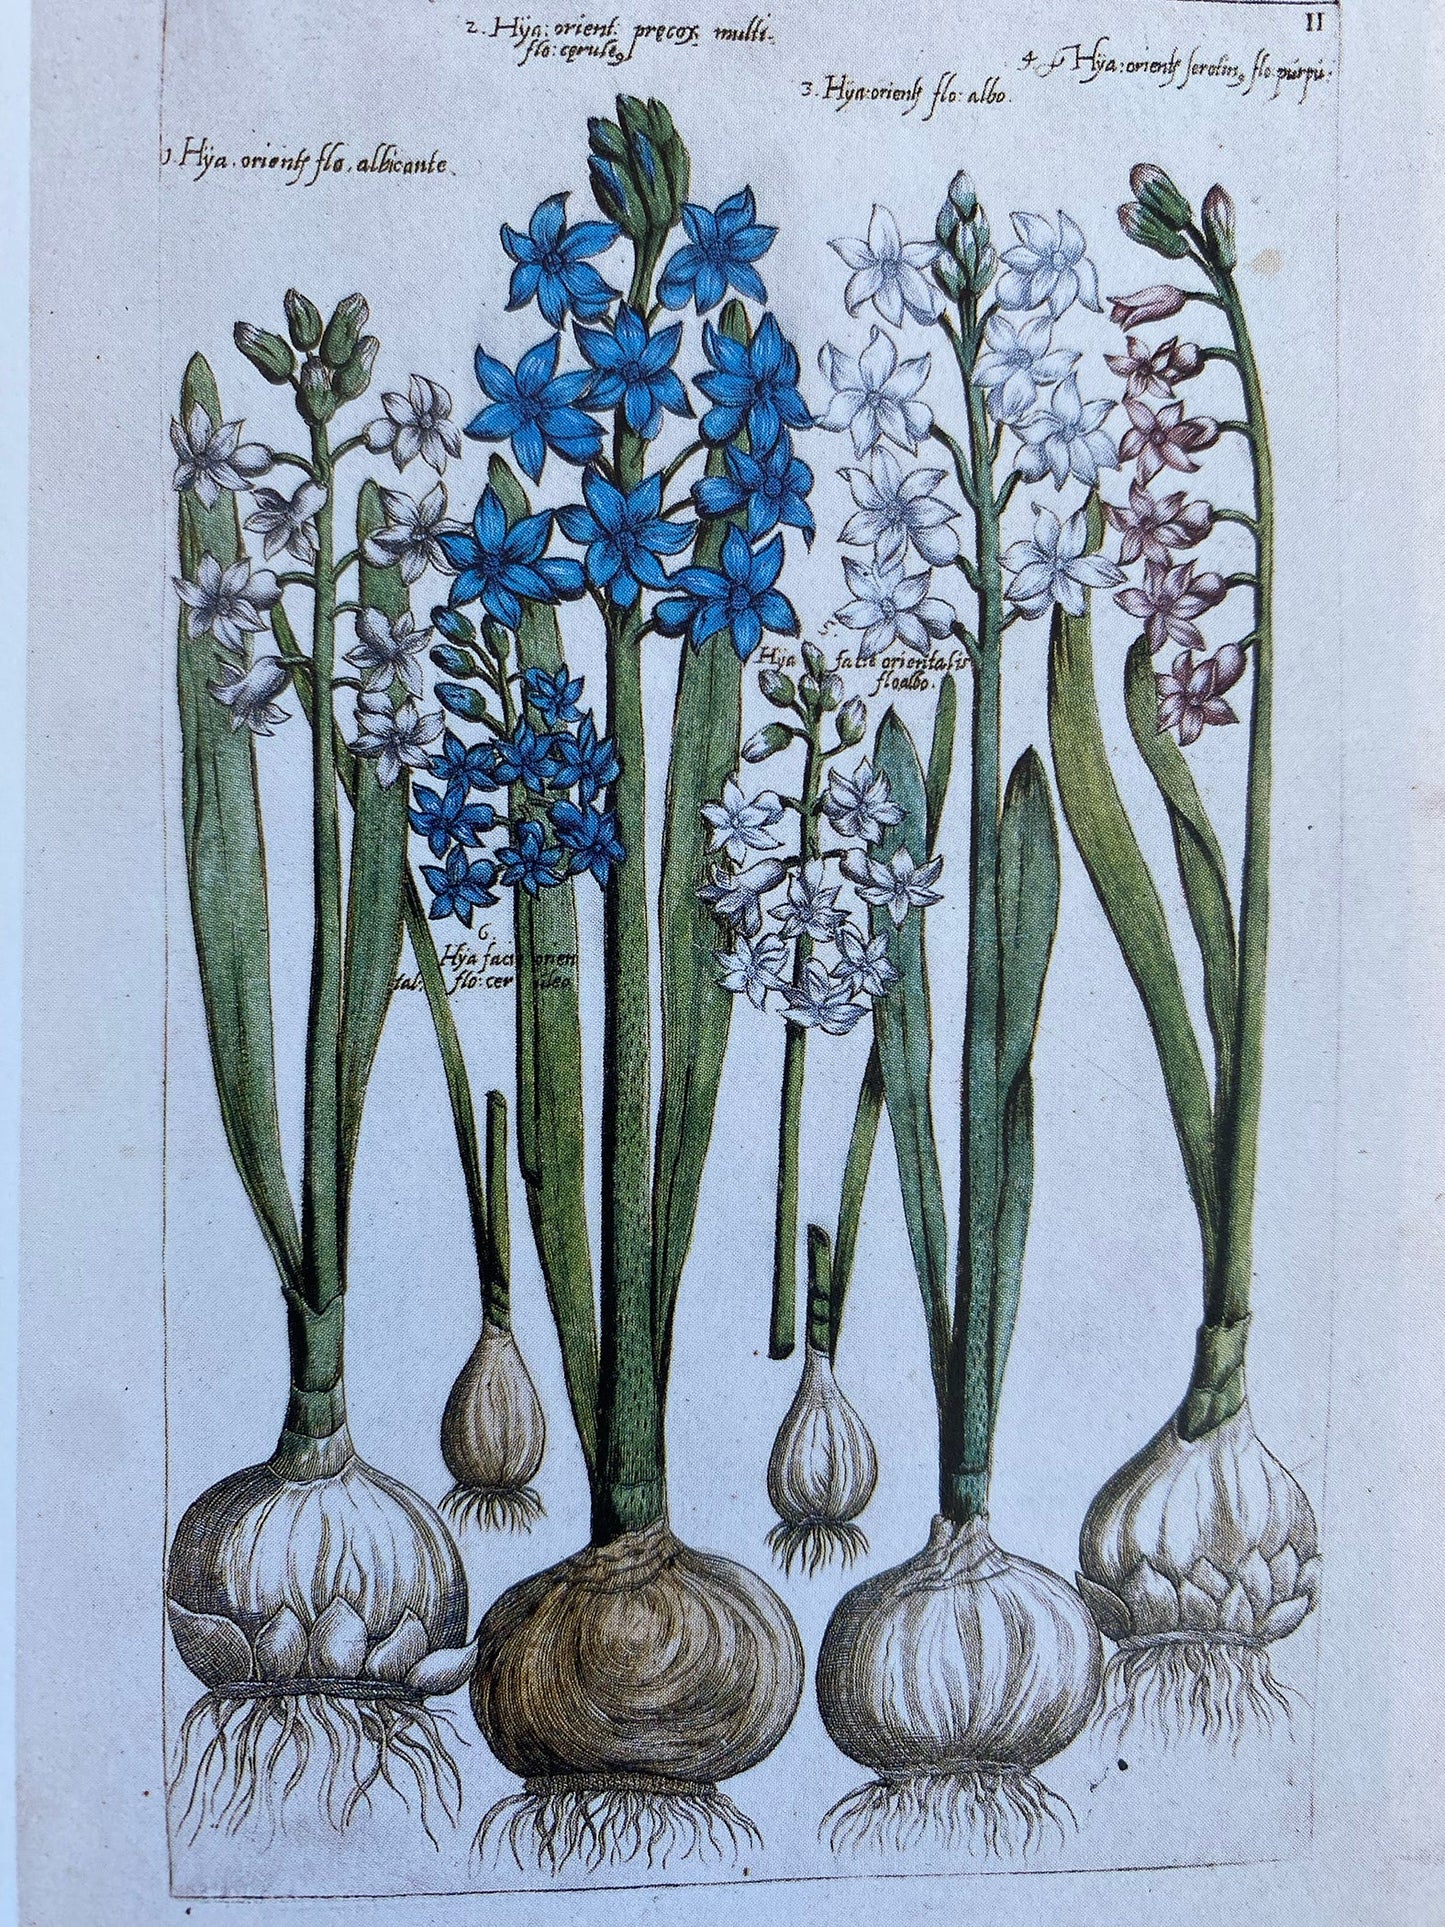 Dulcet Necklace - c.1612 Florilegium with Turquoise